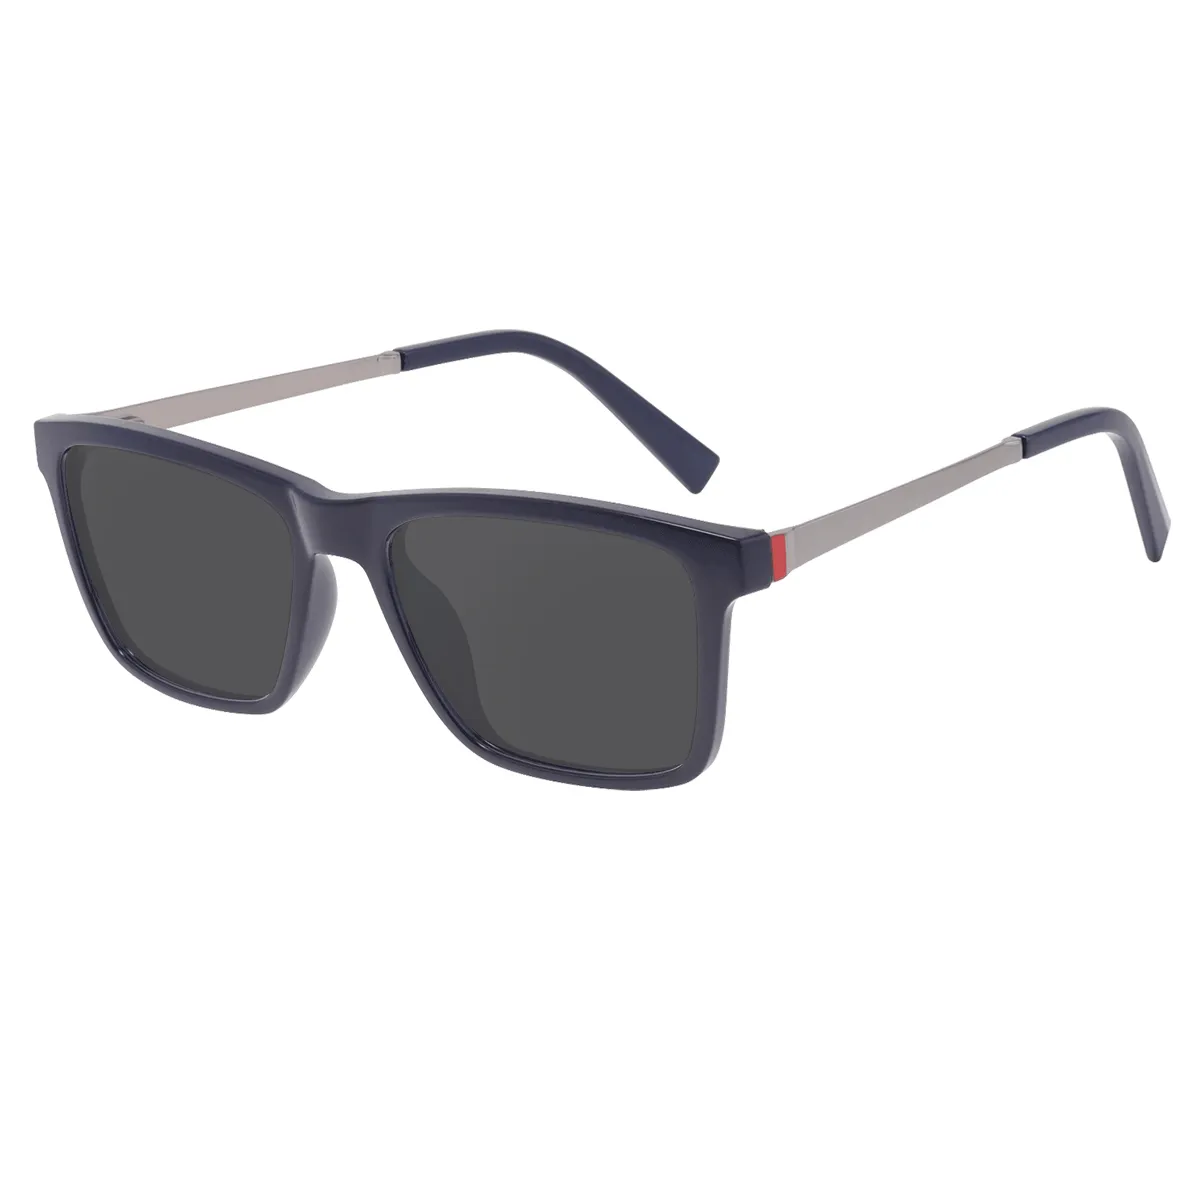 Merle - Square Blue Sunglasses for Men & Women